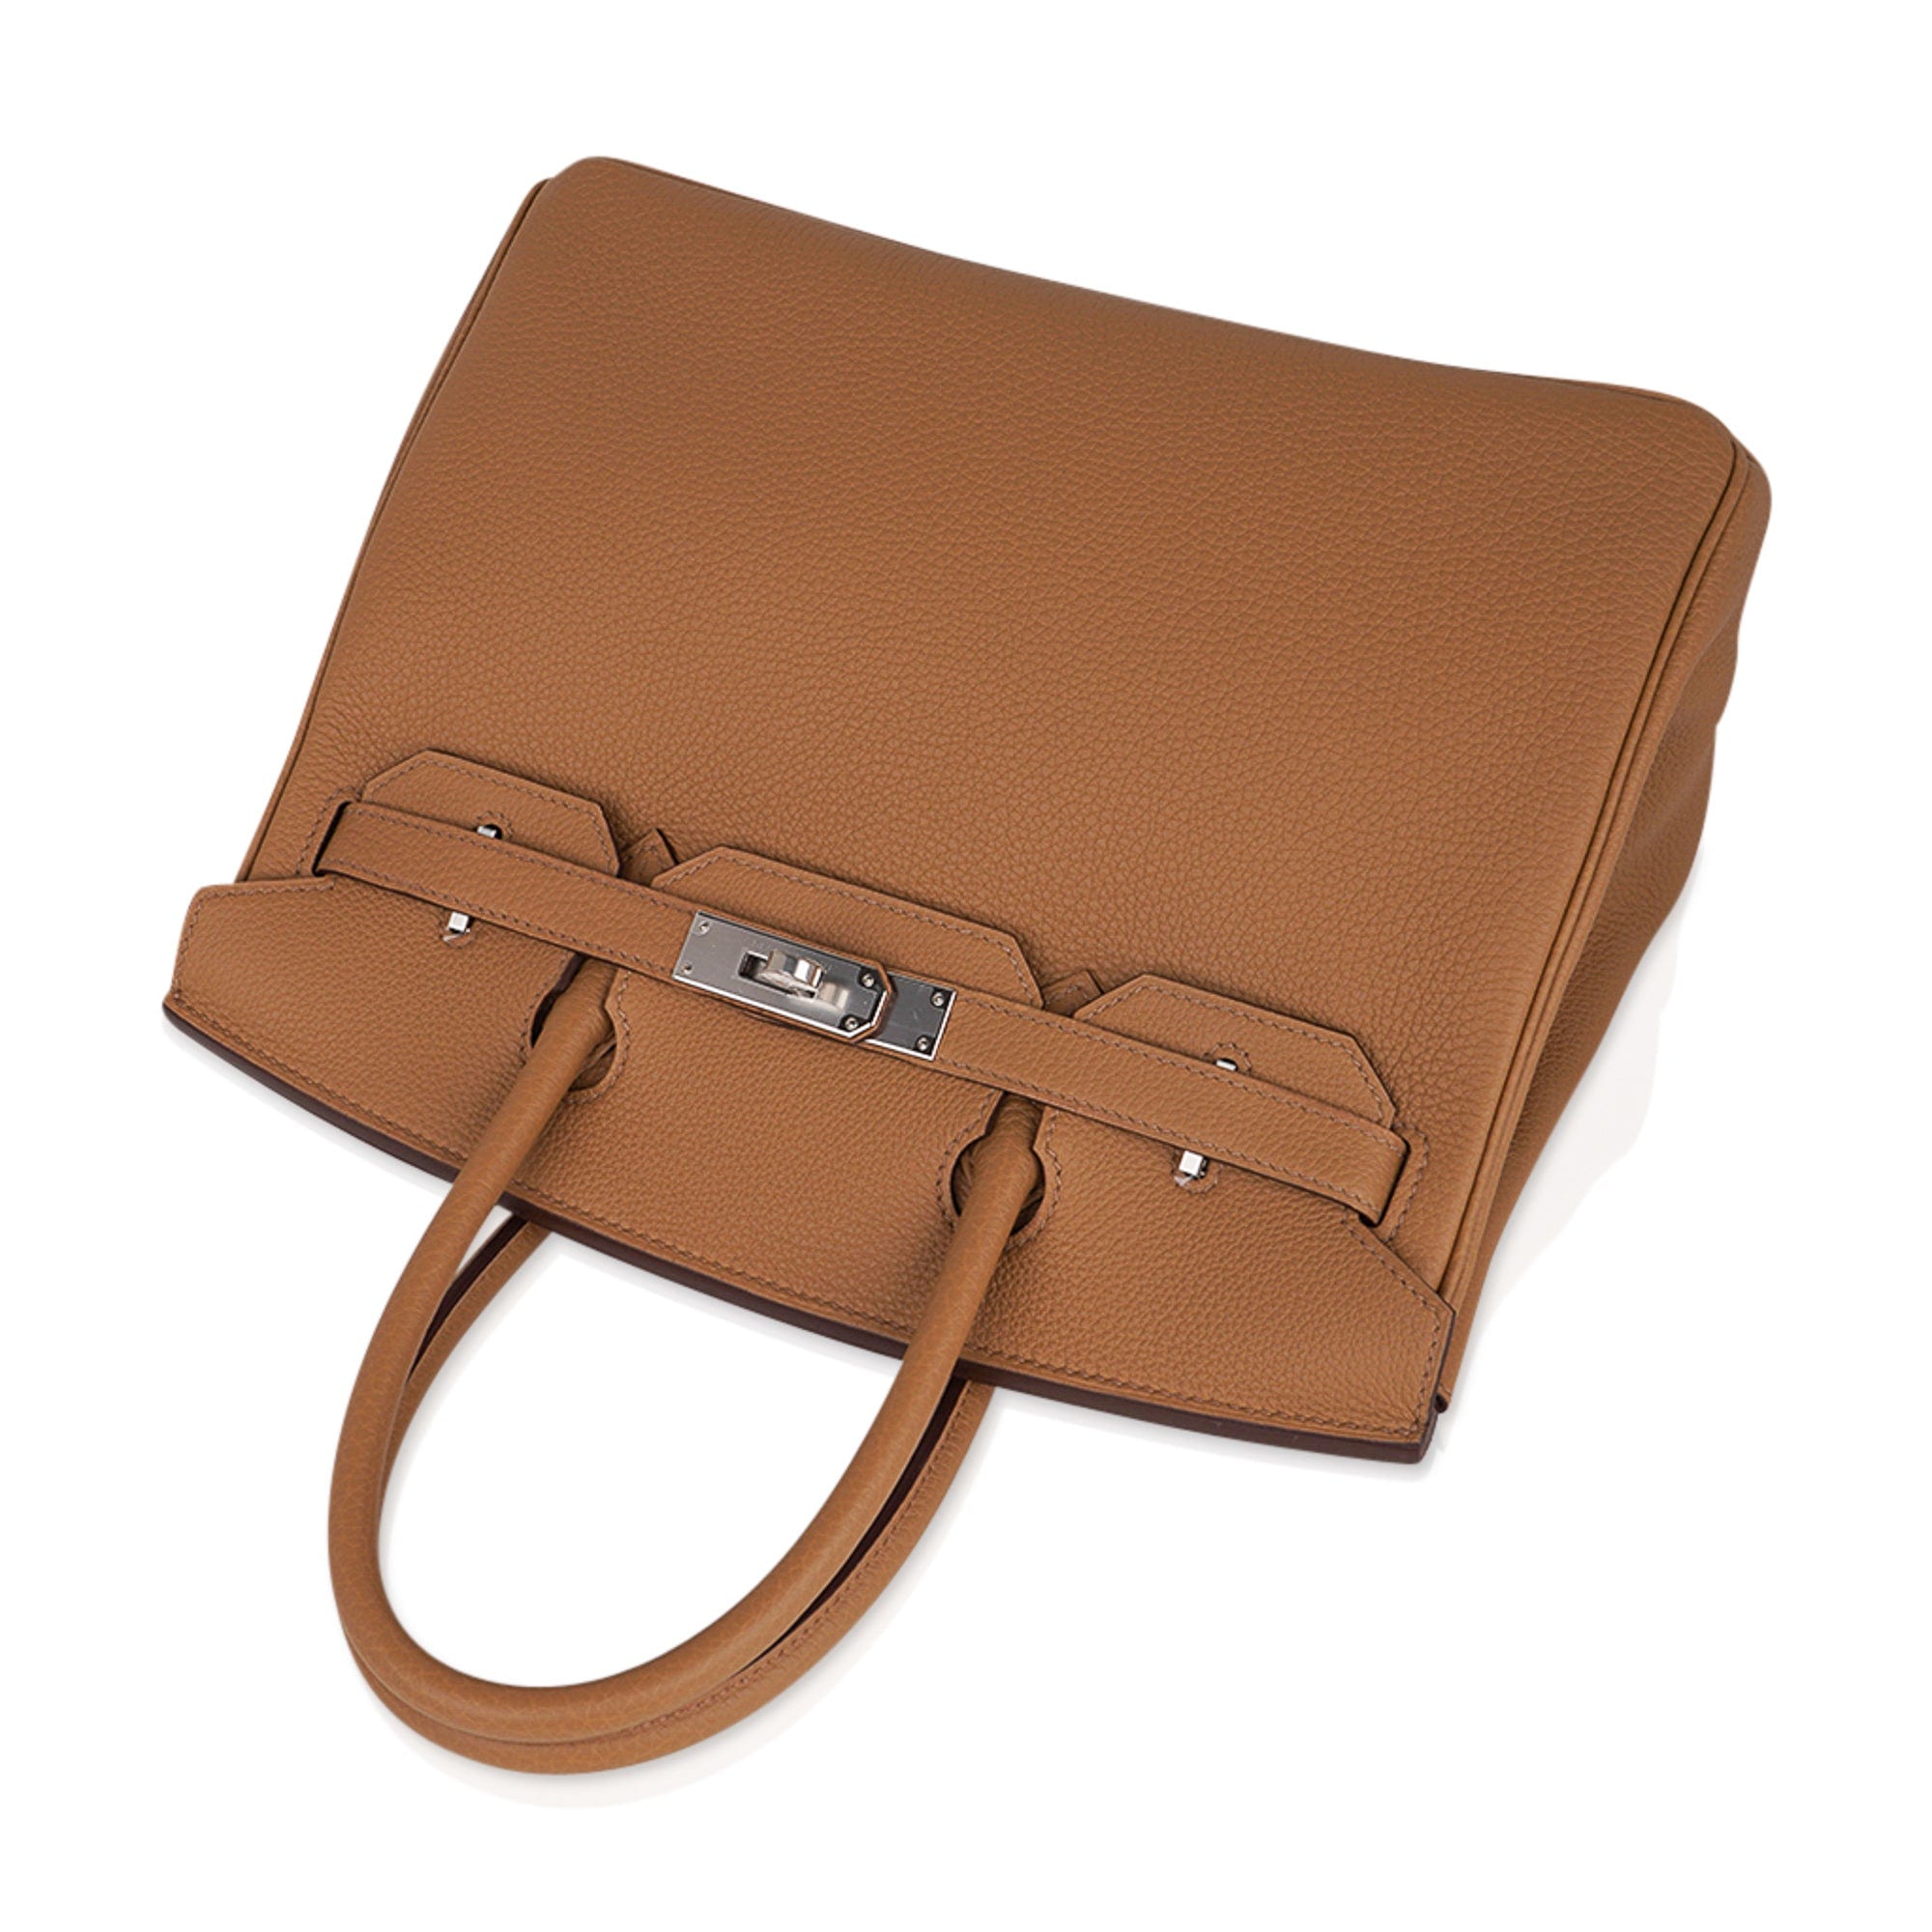 Hermès - Hermès Birkin 30 Togo Leather Handbag-Colvert Silver Hardware